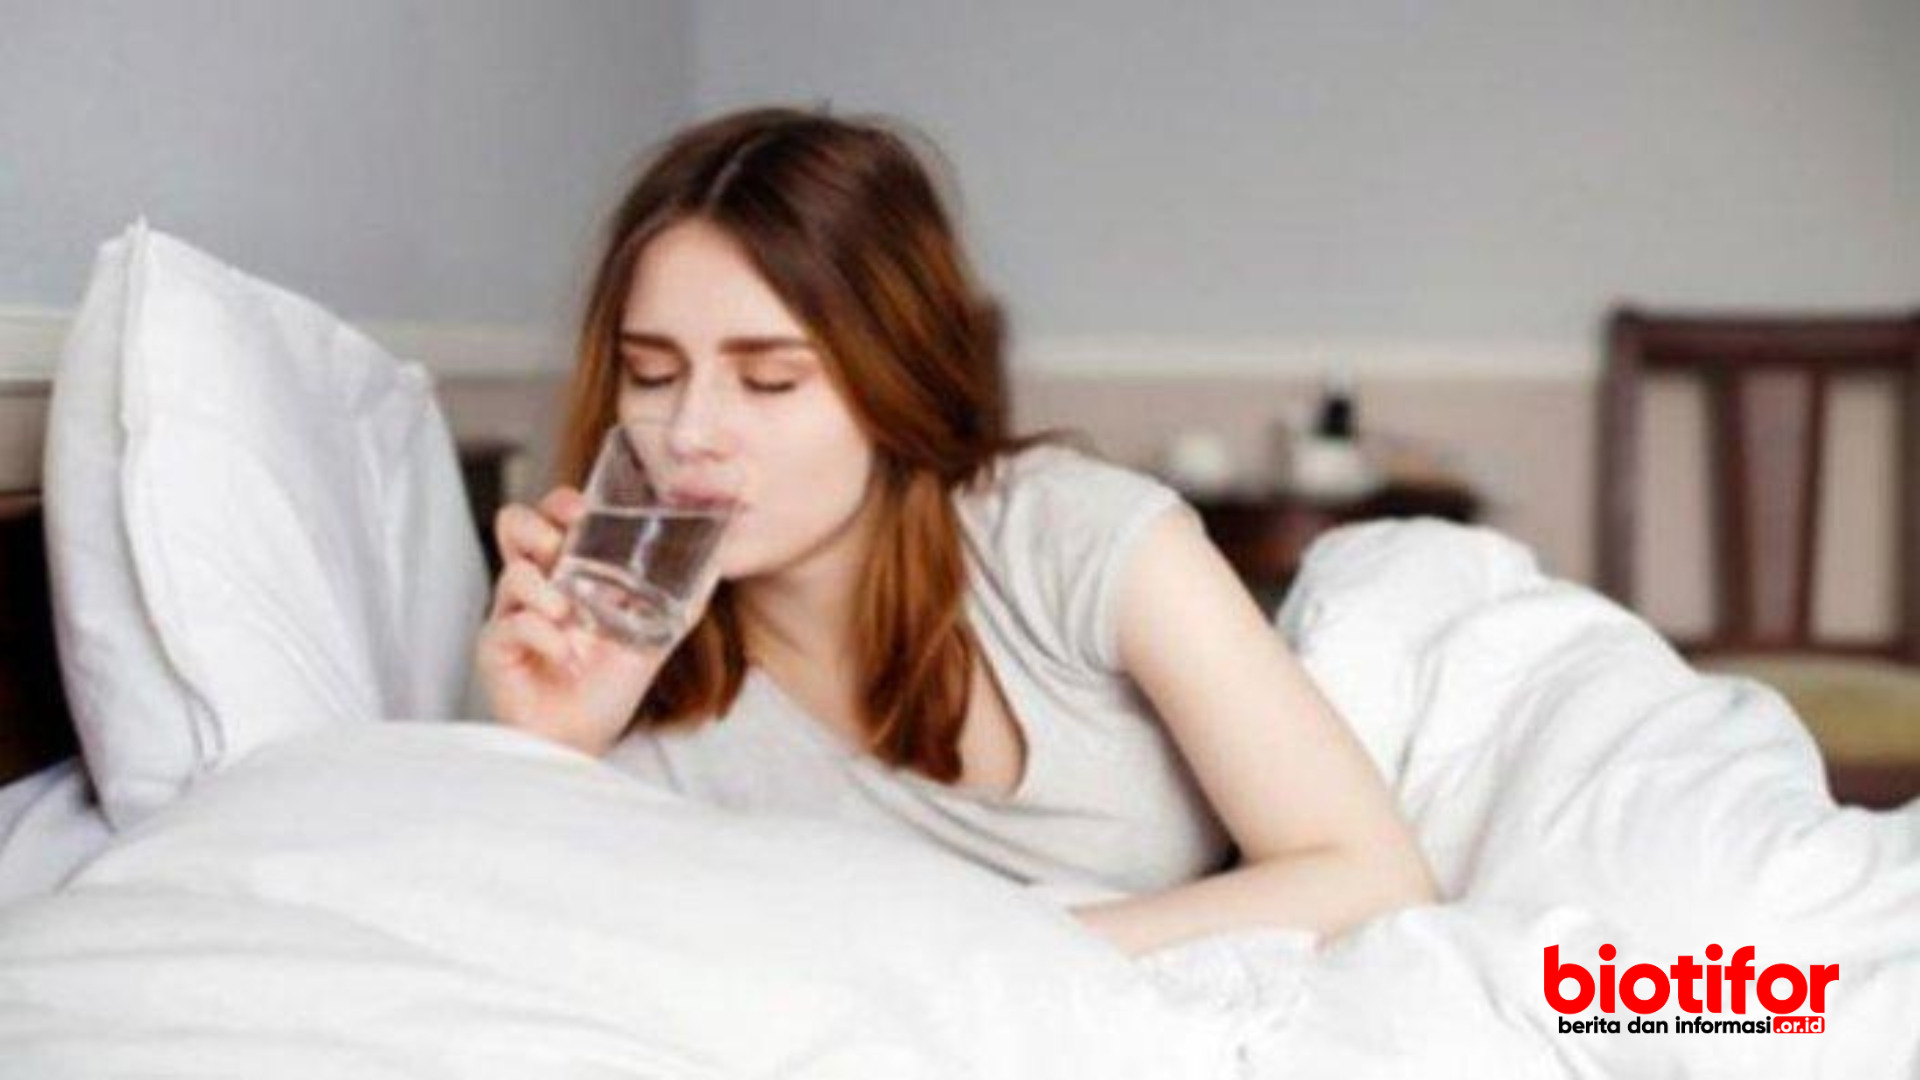 manfaat minum air hangat di pagi hari